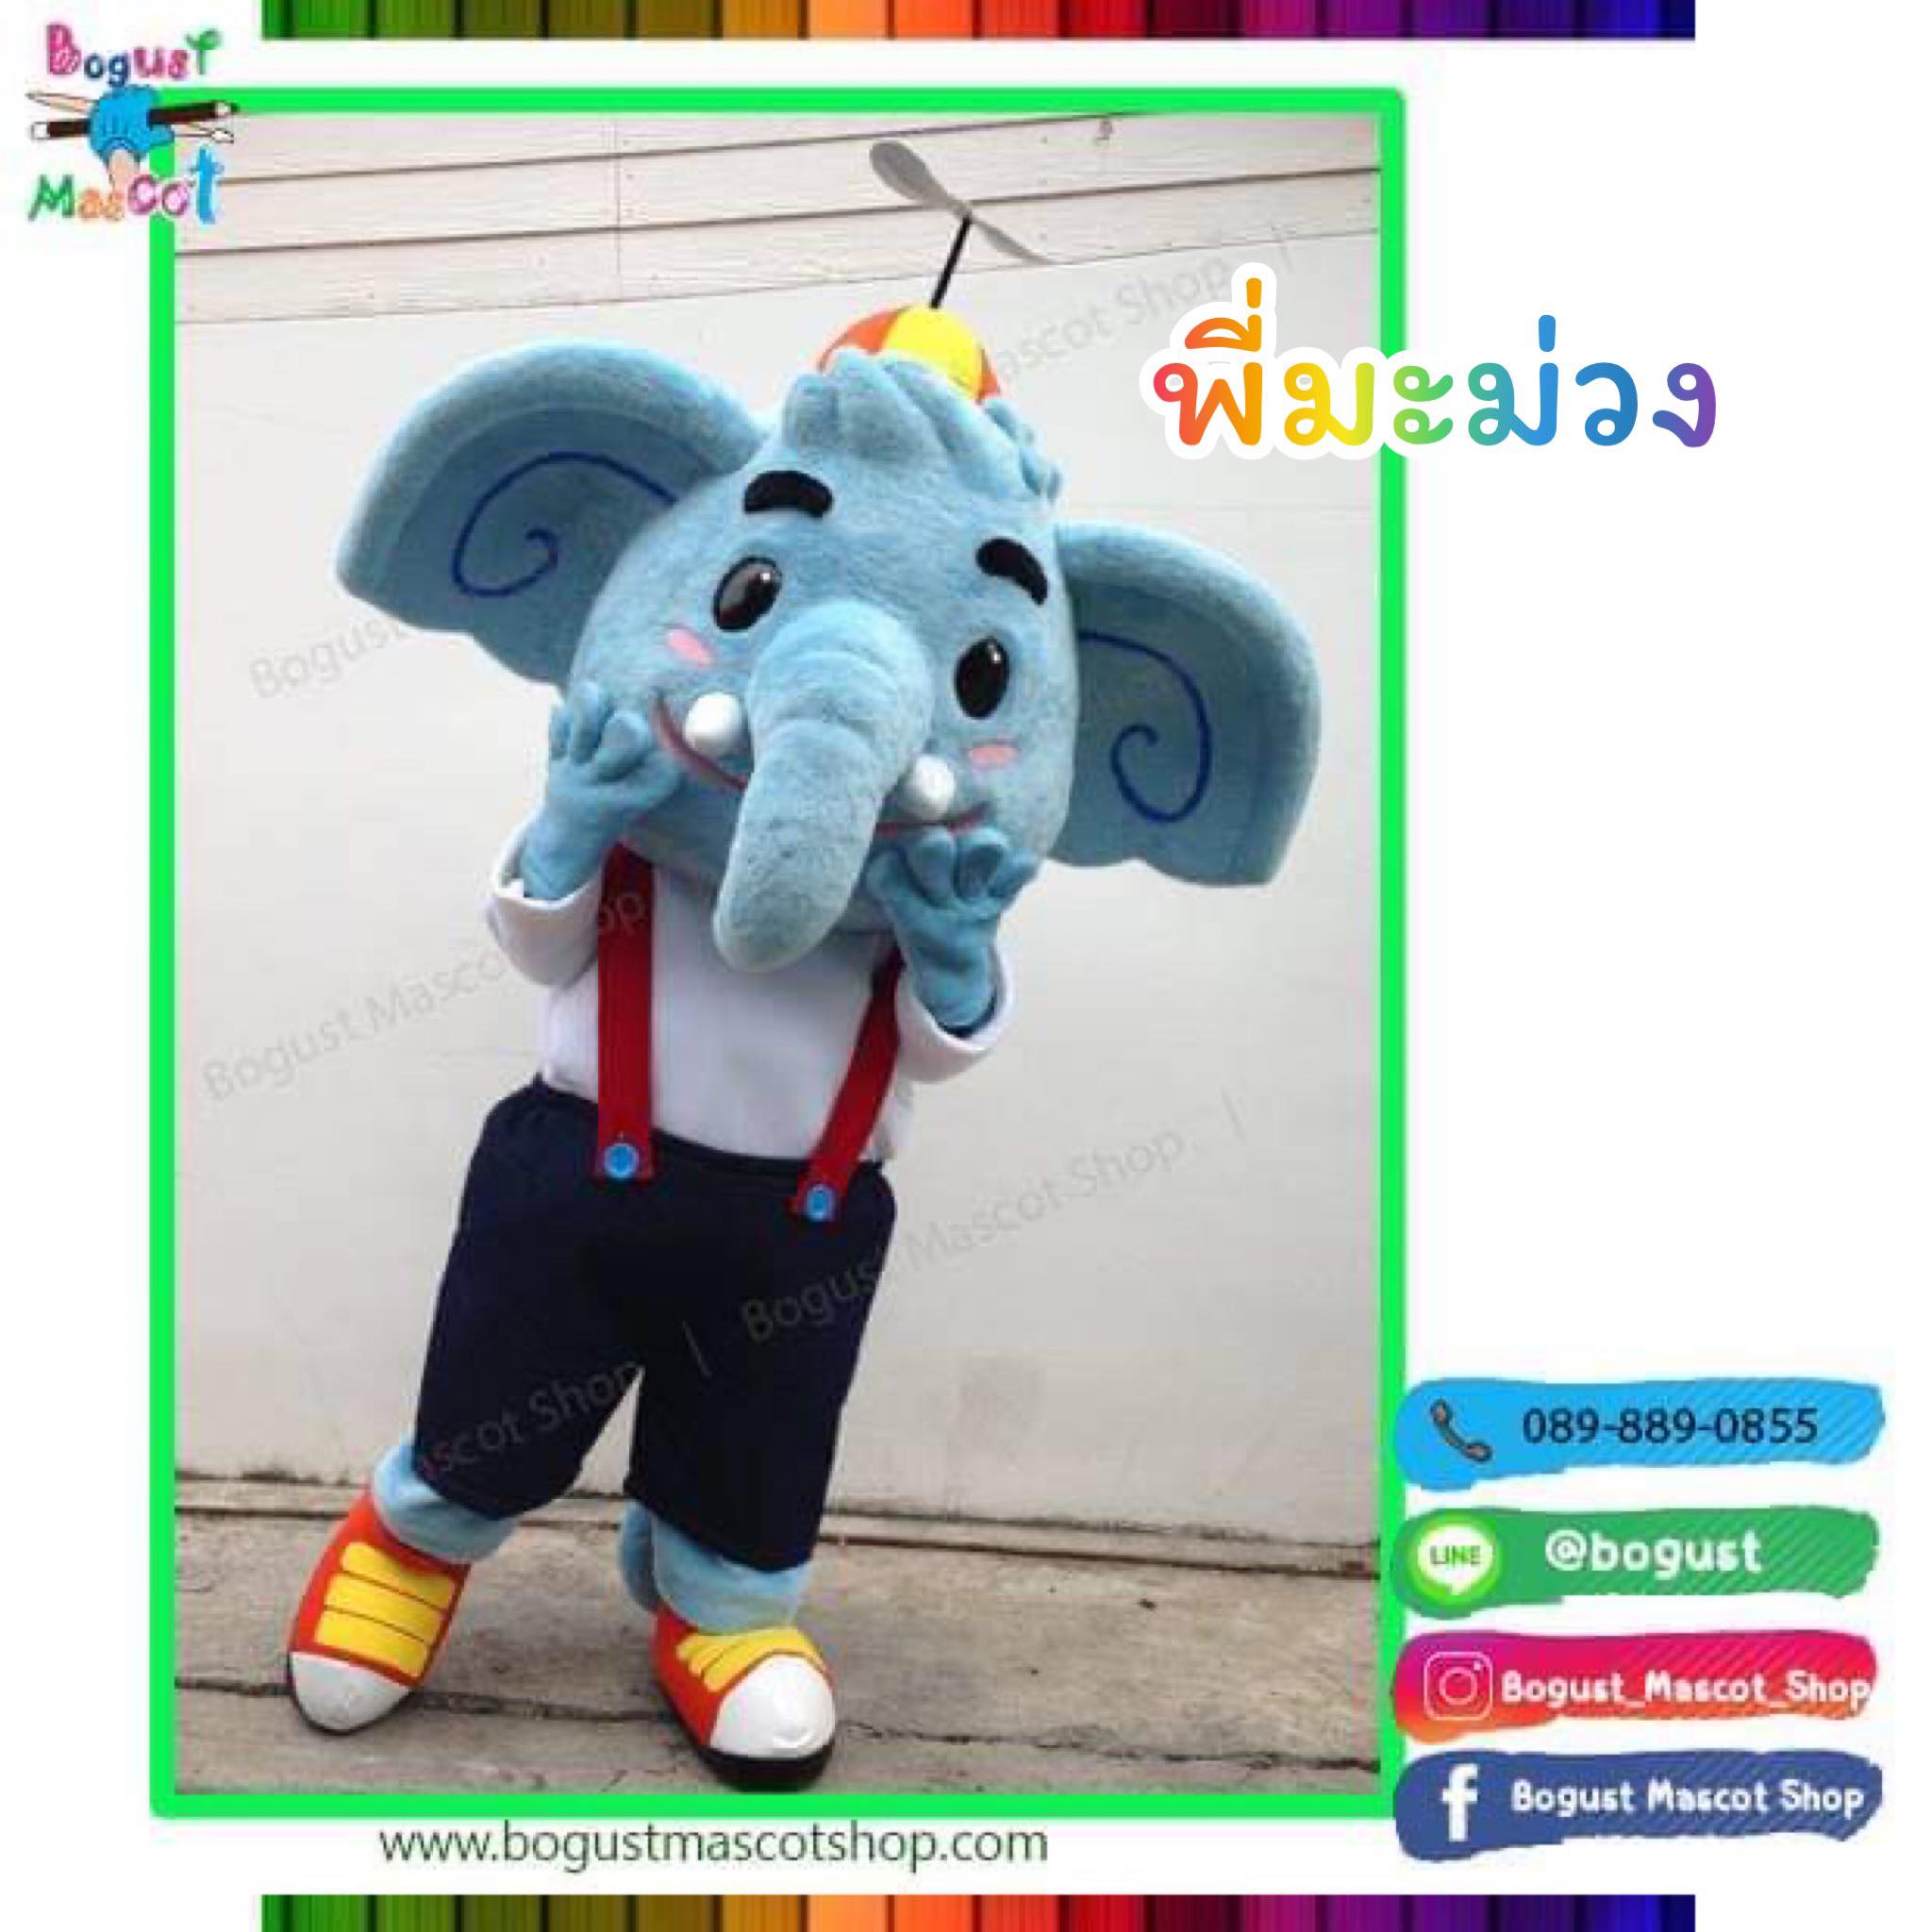 มาสคอต (Mascot) ---> ช้าง , พี่มะม่วง , น้องมะนาว